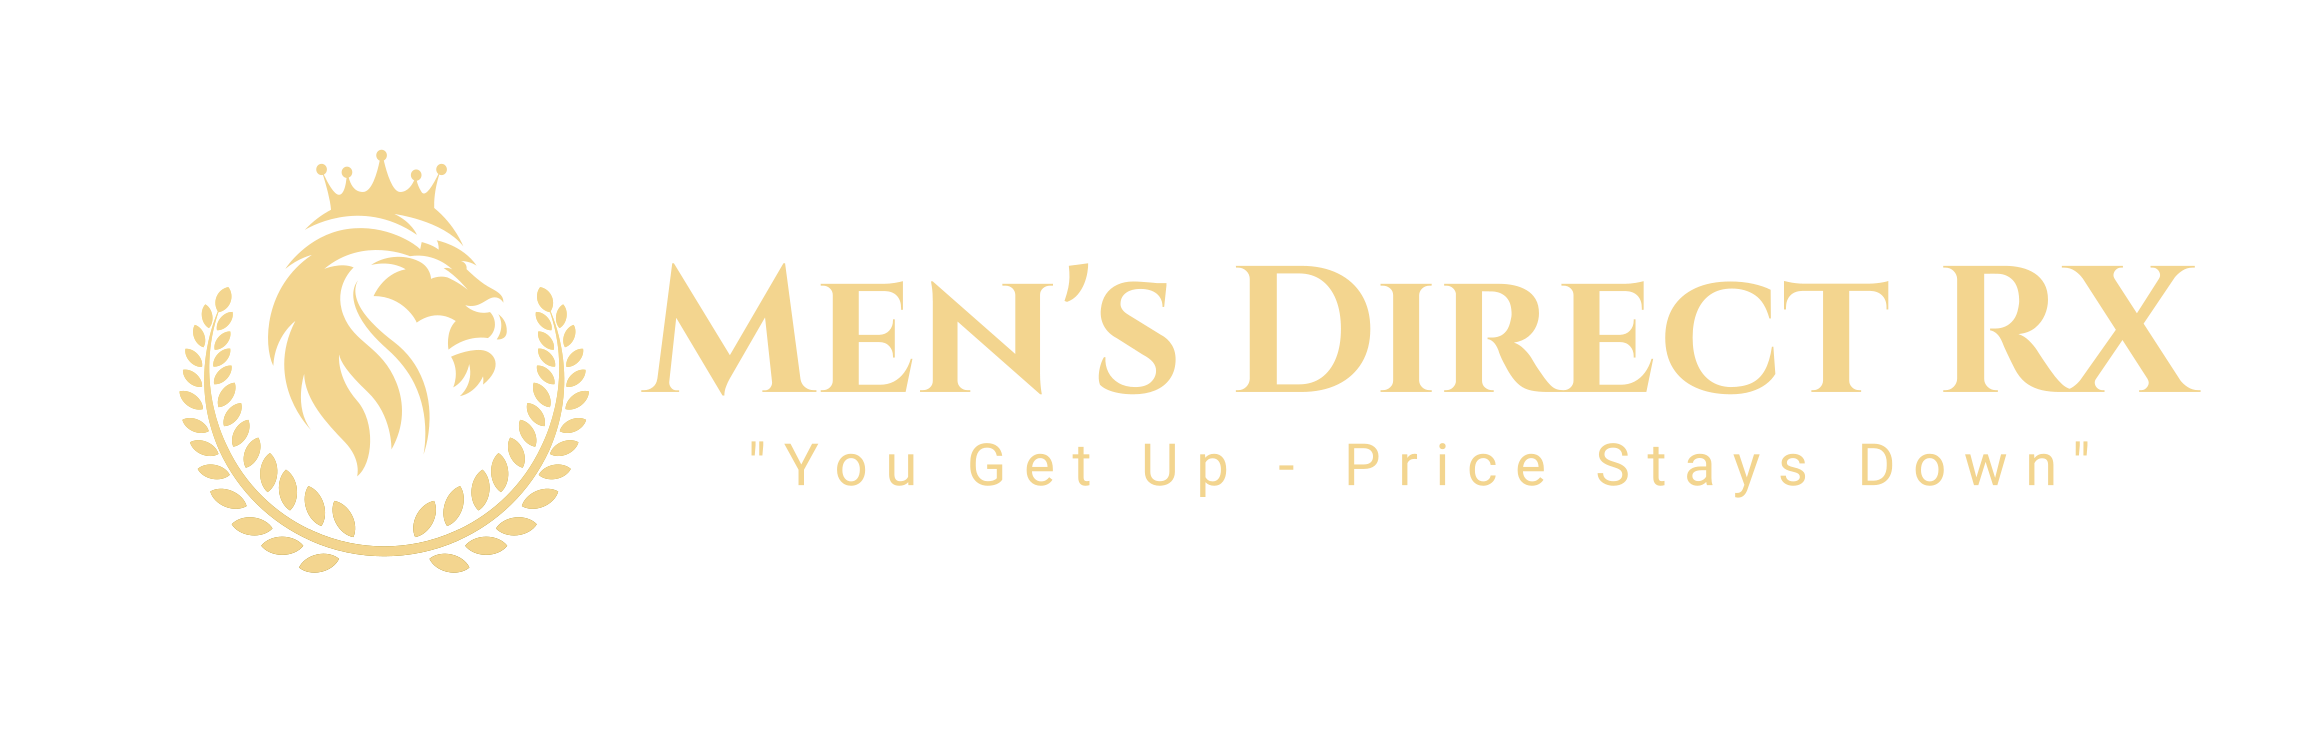 Men's Direct RX